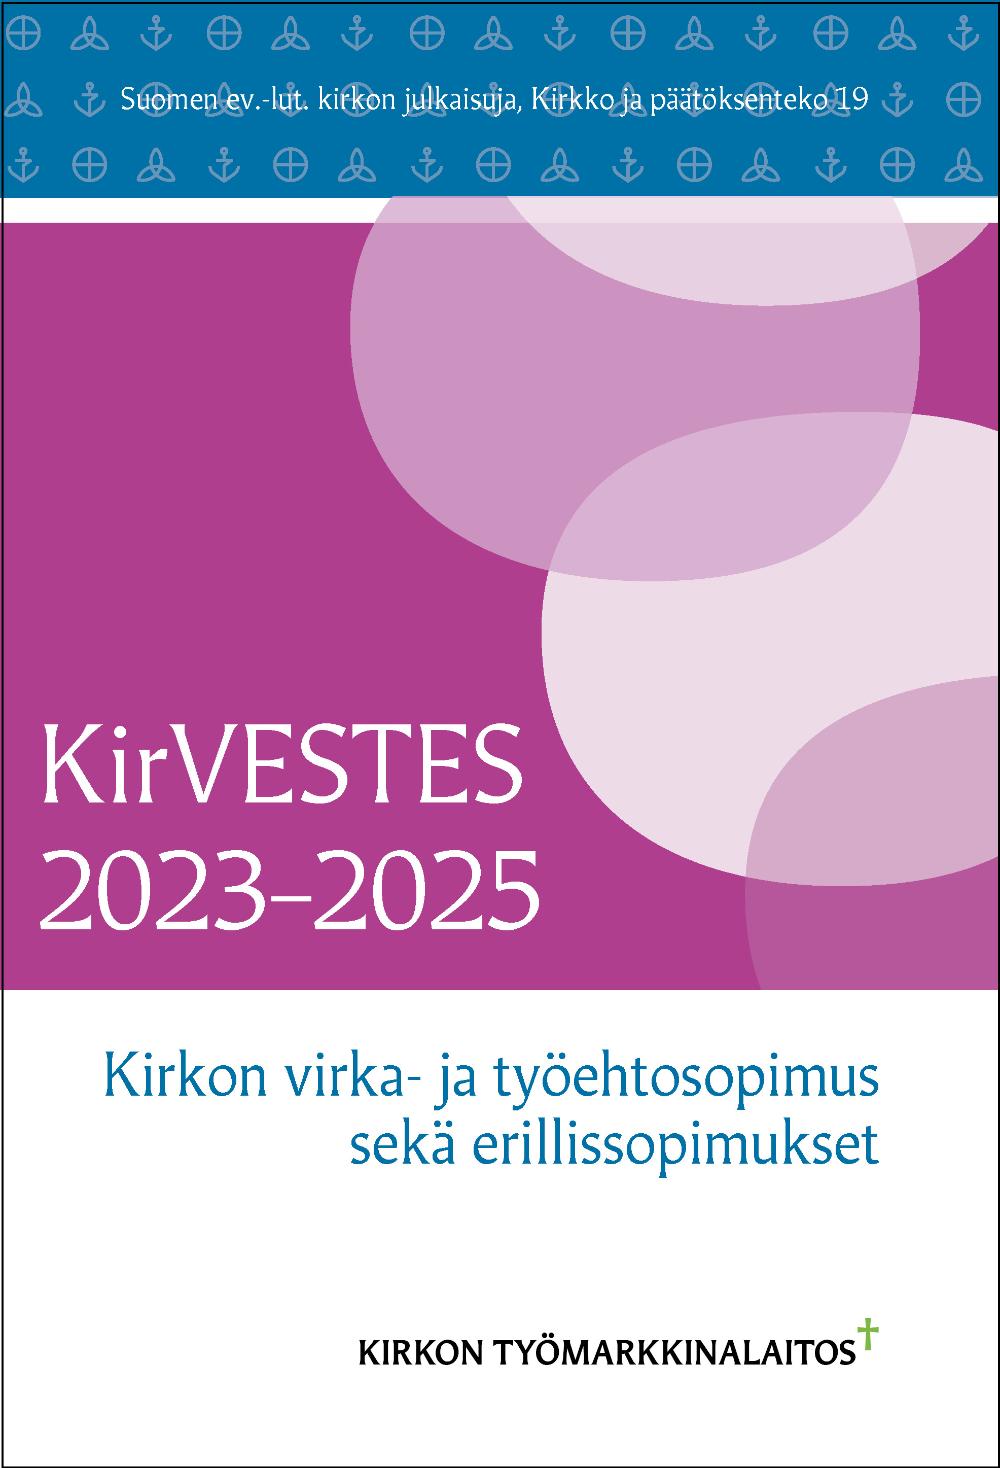 KirVESTES 2023-2025